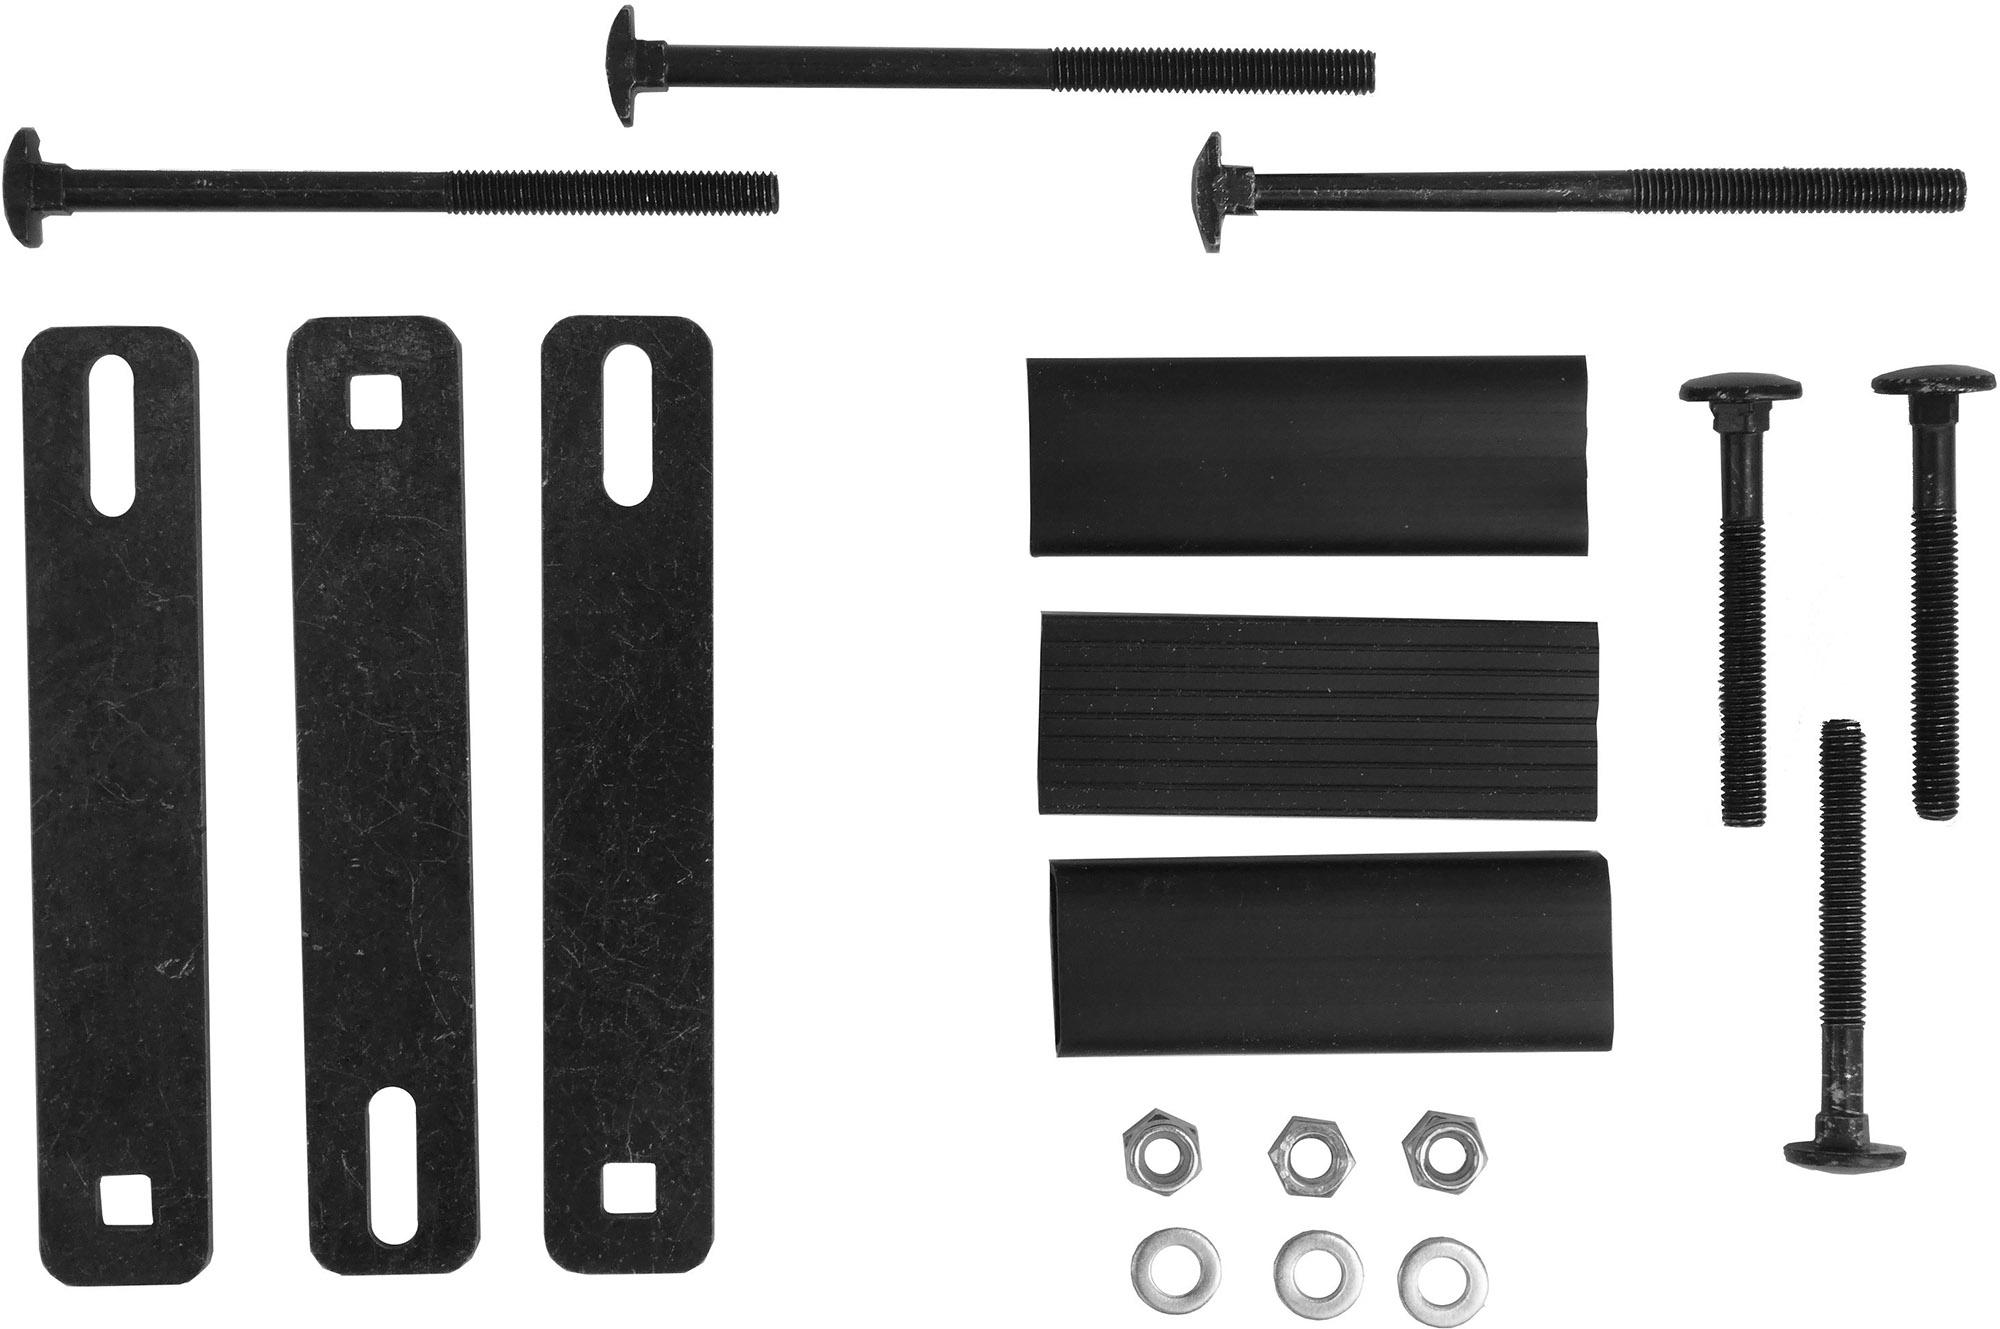 Peruzo Square Bars Fixing Kit (art.875)  Black